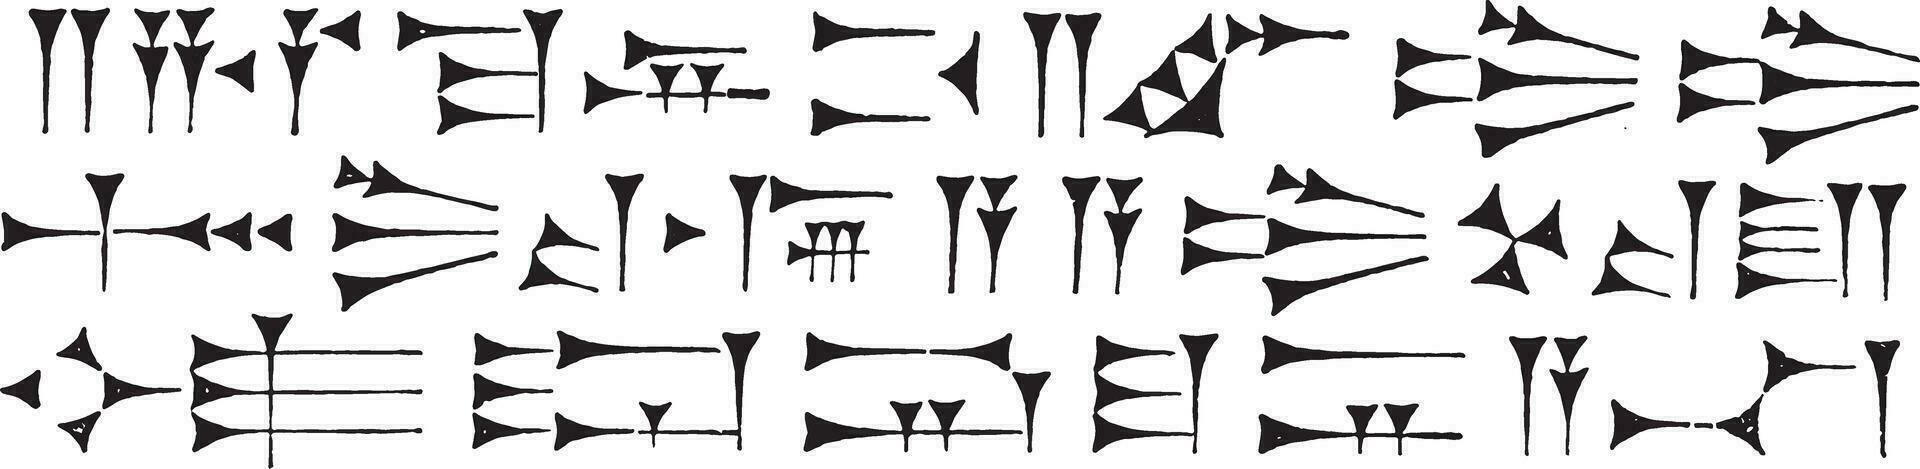 anarónico cuneiforme escribiendo, Clásico grabado. vector